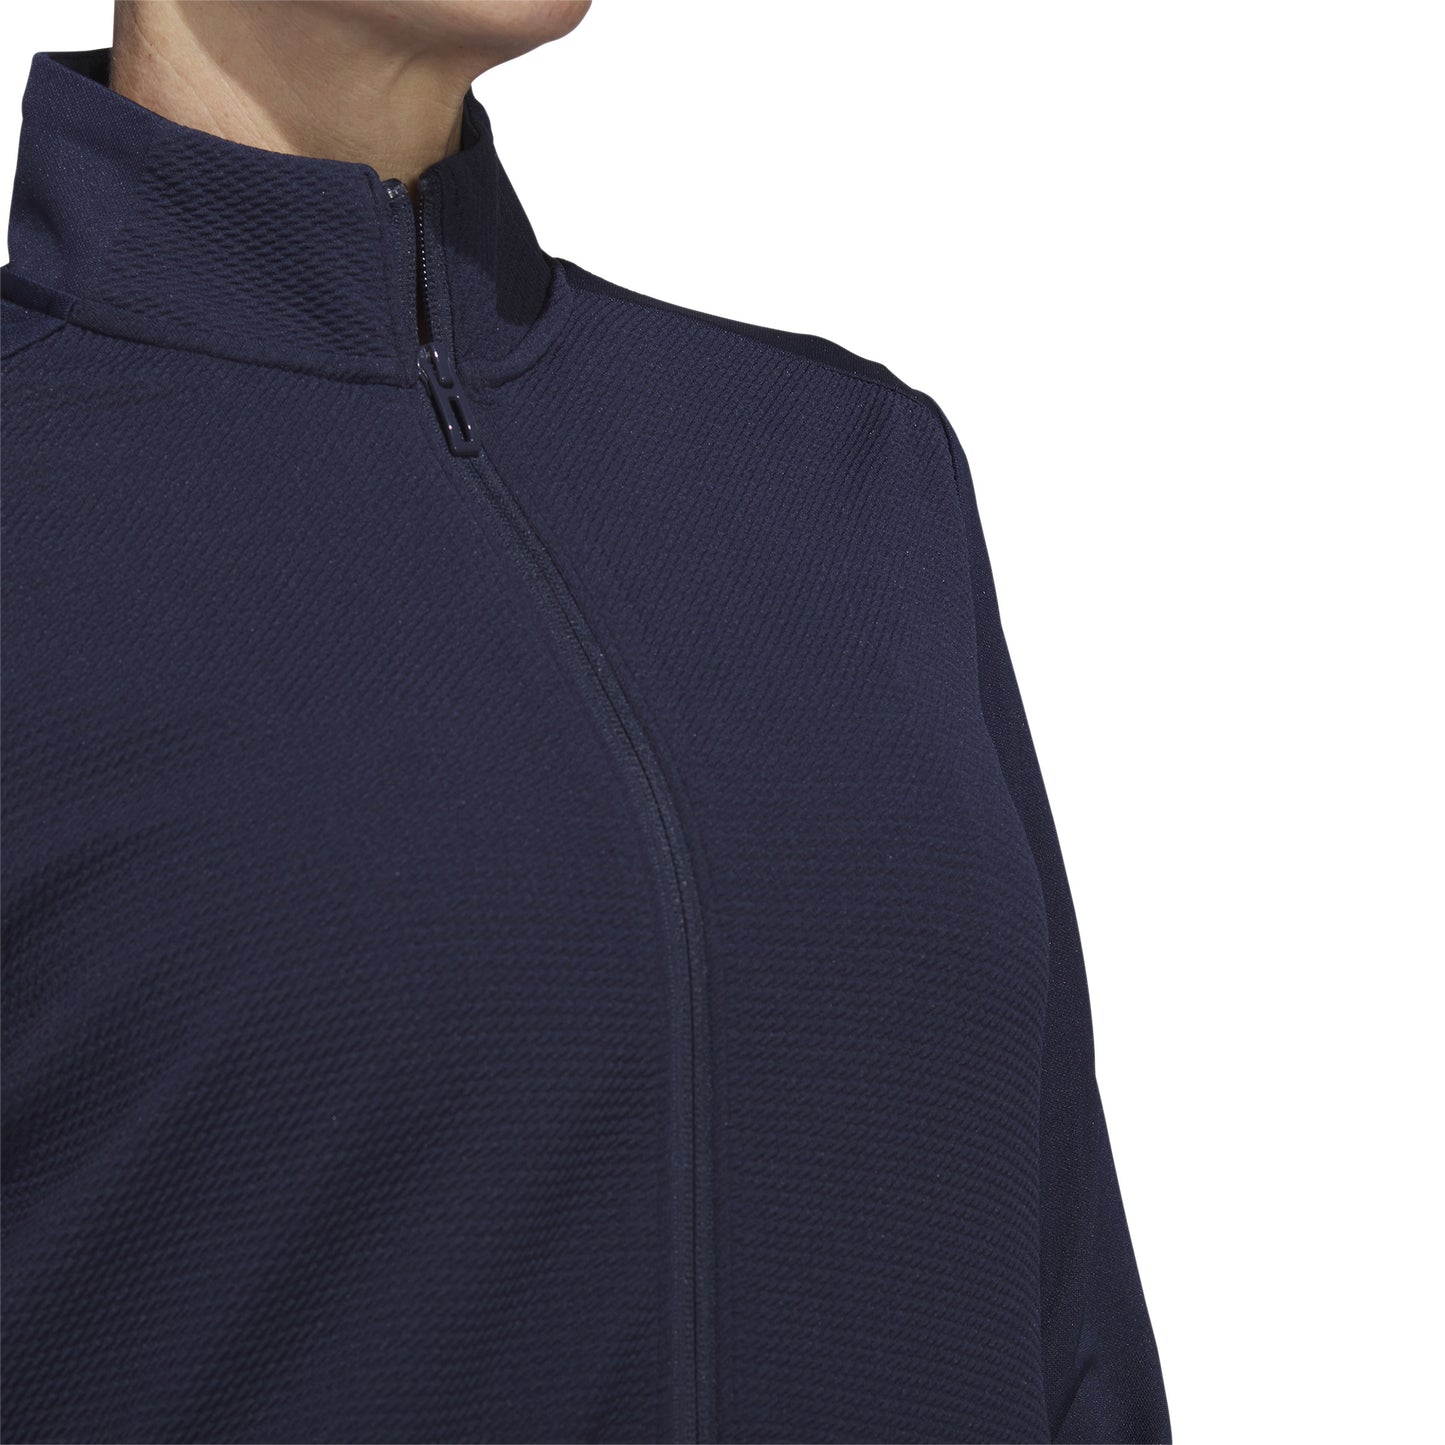 adidas Ladies Lightweight Textured Jersey Golf Jacket in Collegiate Navy